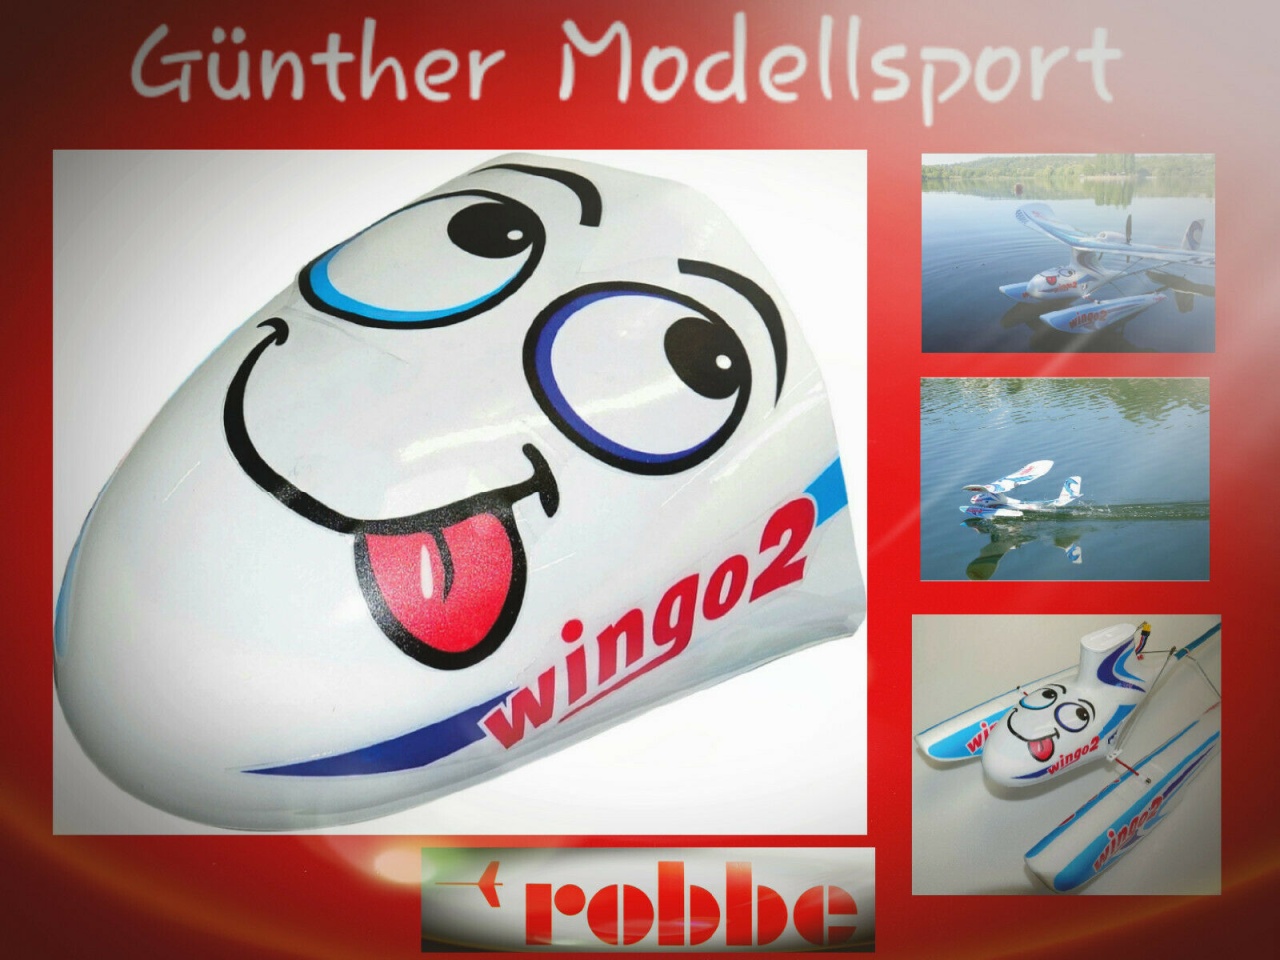 robbe Aero Rumpfnase Wingo 2, 26560037